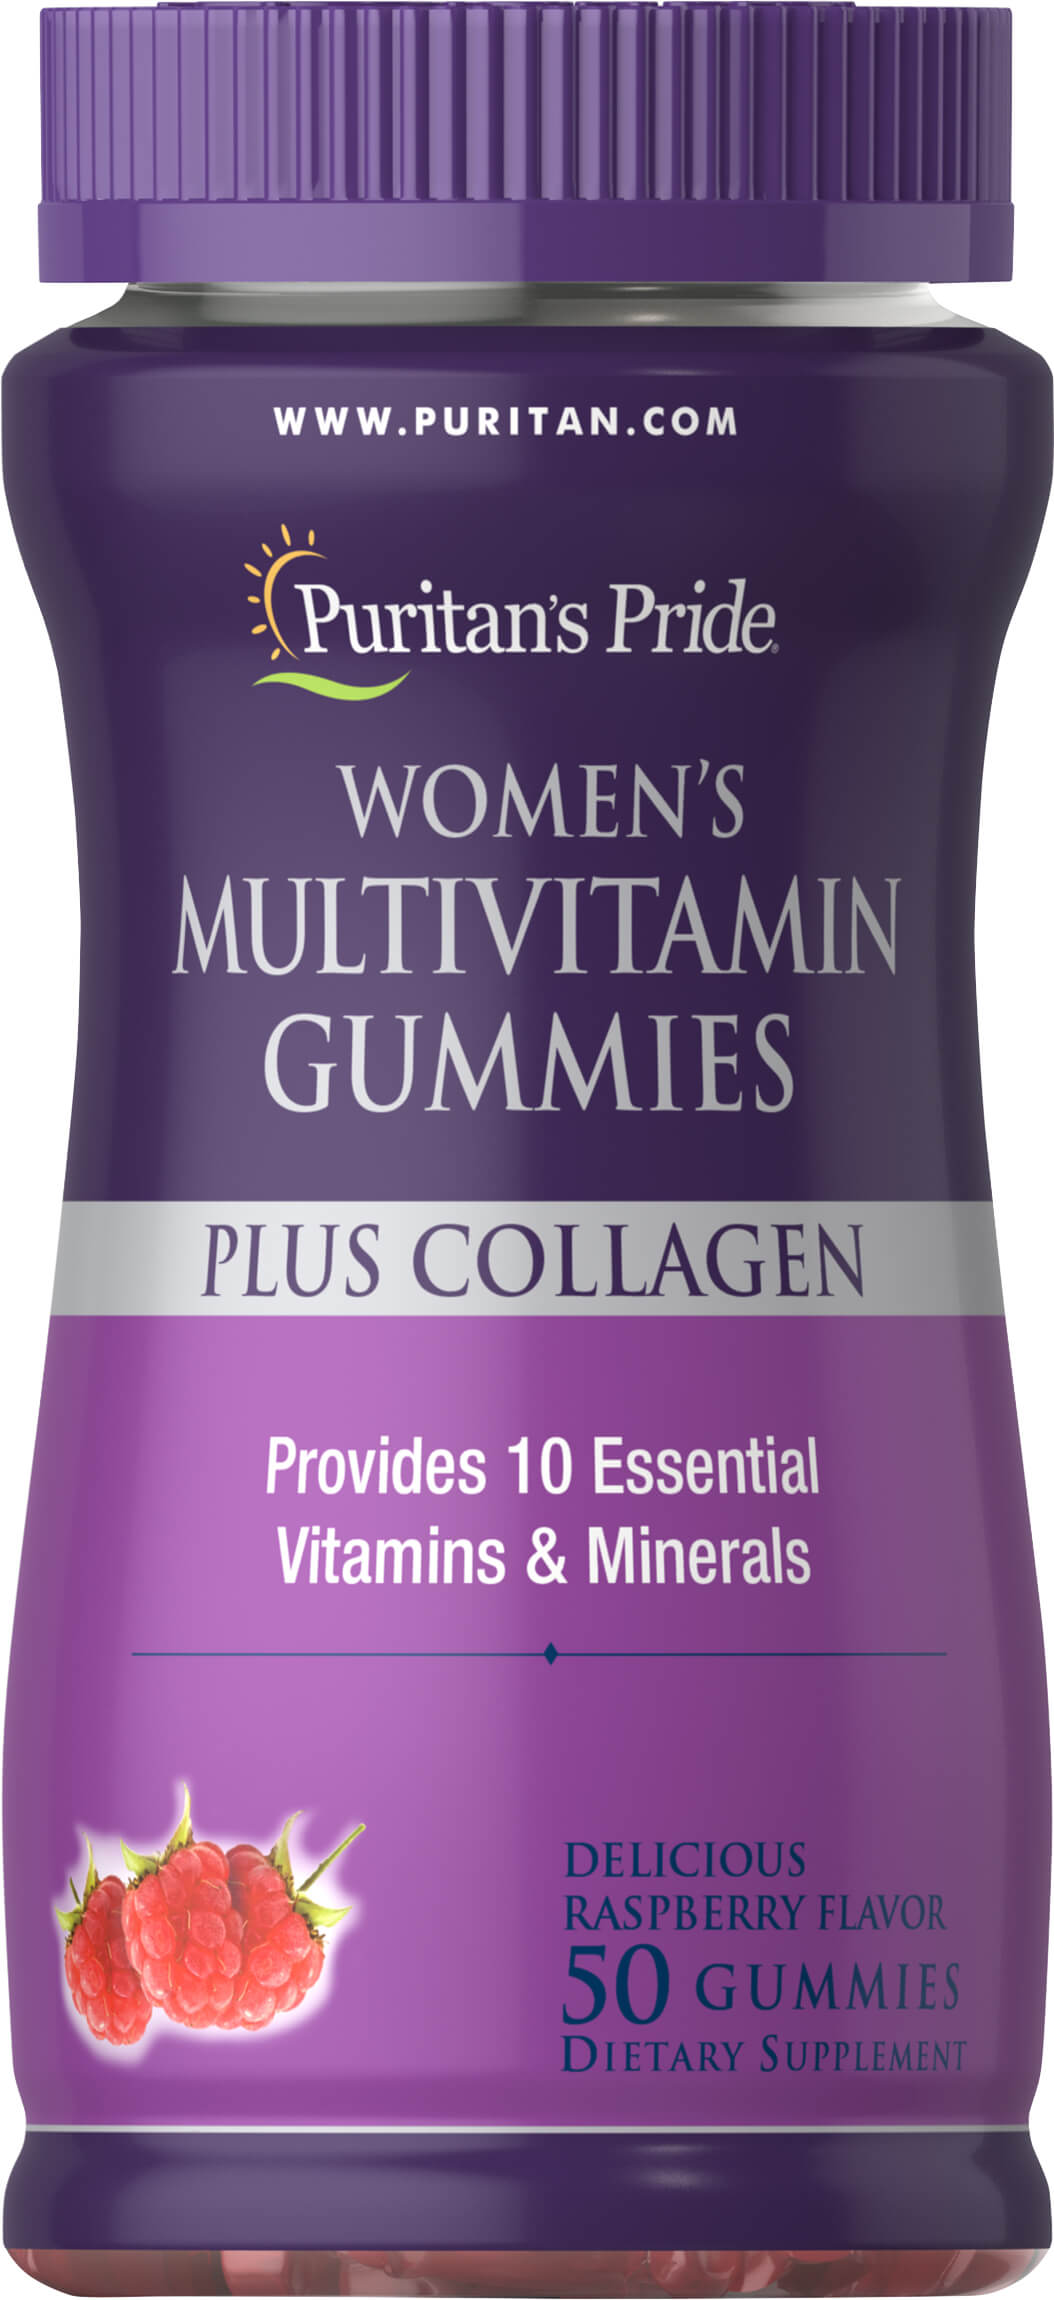 女仕複合維生素+膠原蛋白軟糖 Women's Multivitamin Gummies Plus Collagen